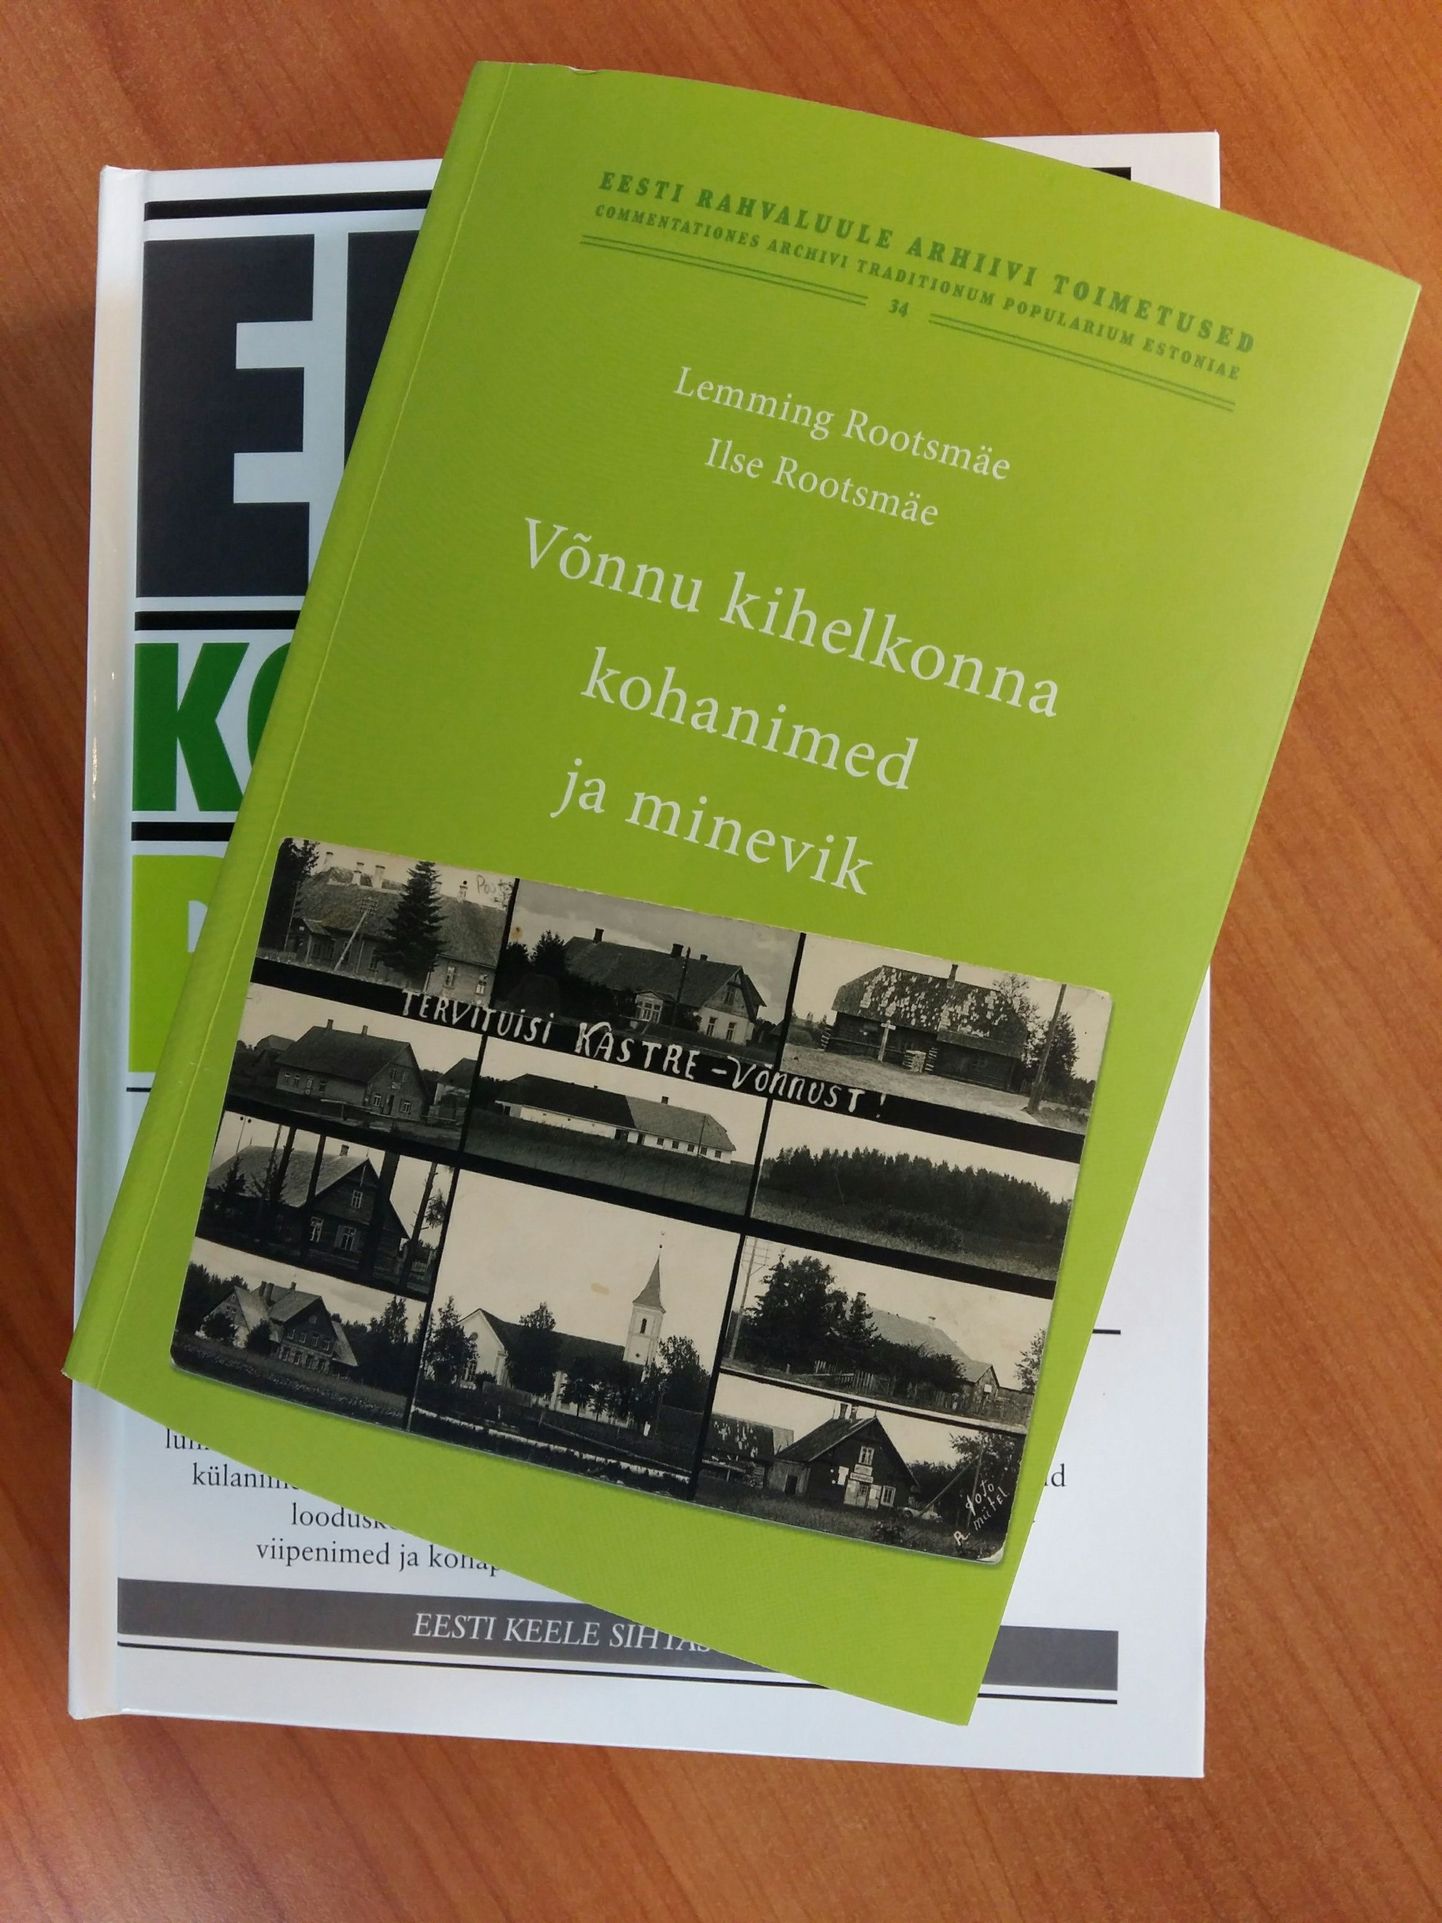 «Eesti kohanimeraamatust» on Lemming Rootsmäe ja Ilse Rootsmäe «Võnnu kihelkonna kohanimed ja minevik» mõnevõrra õhem, väiksem ja kergem.